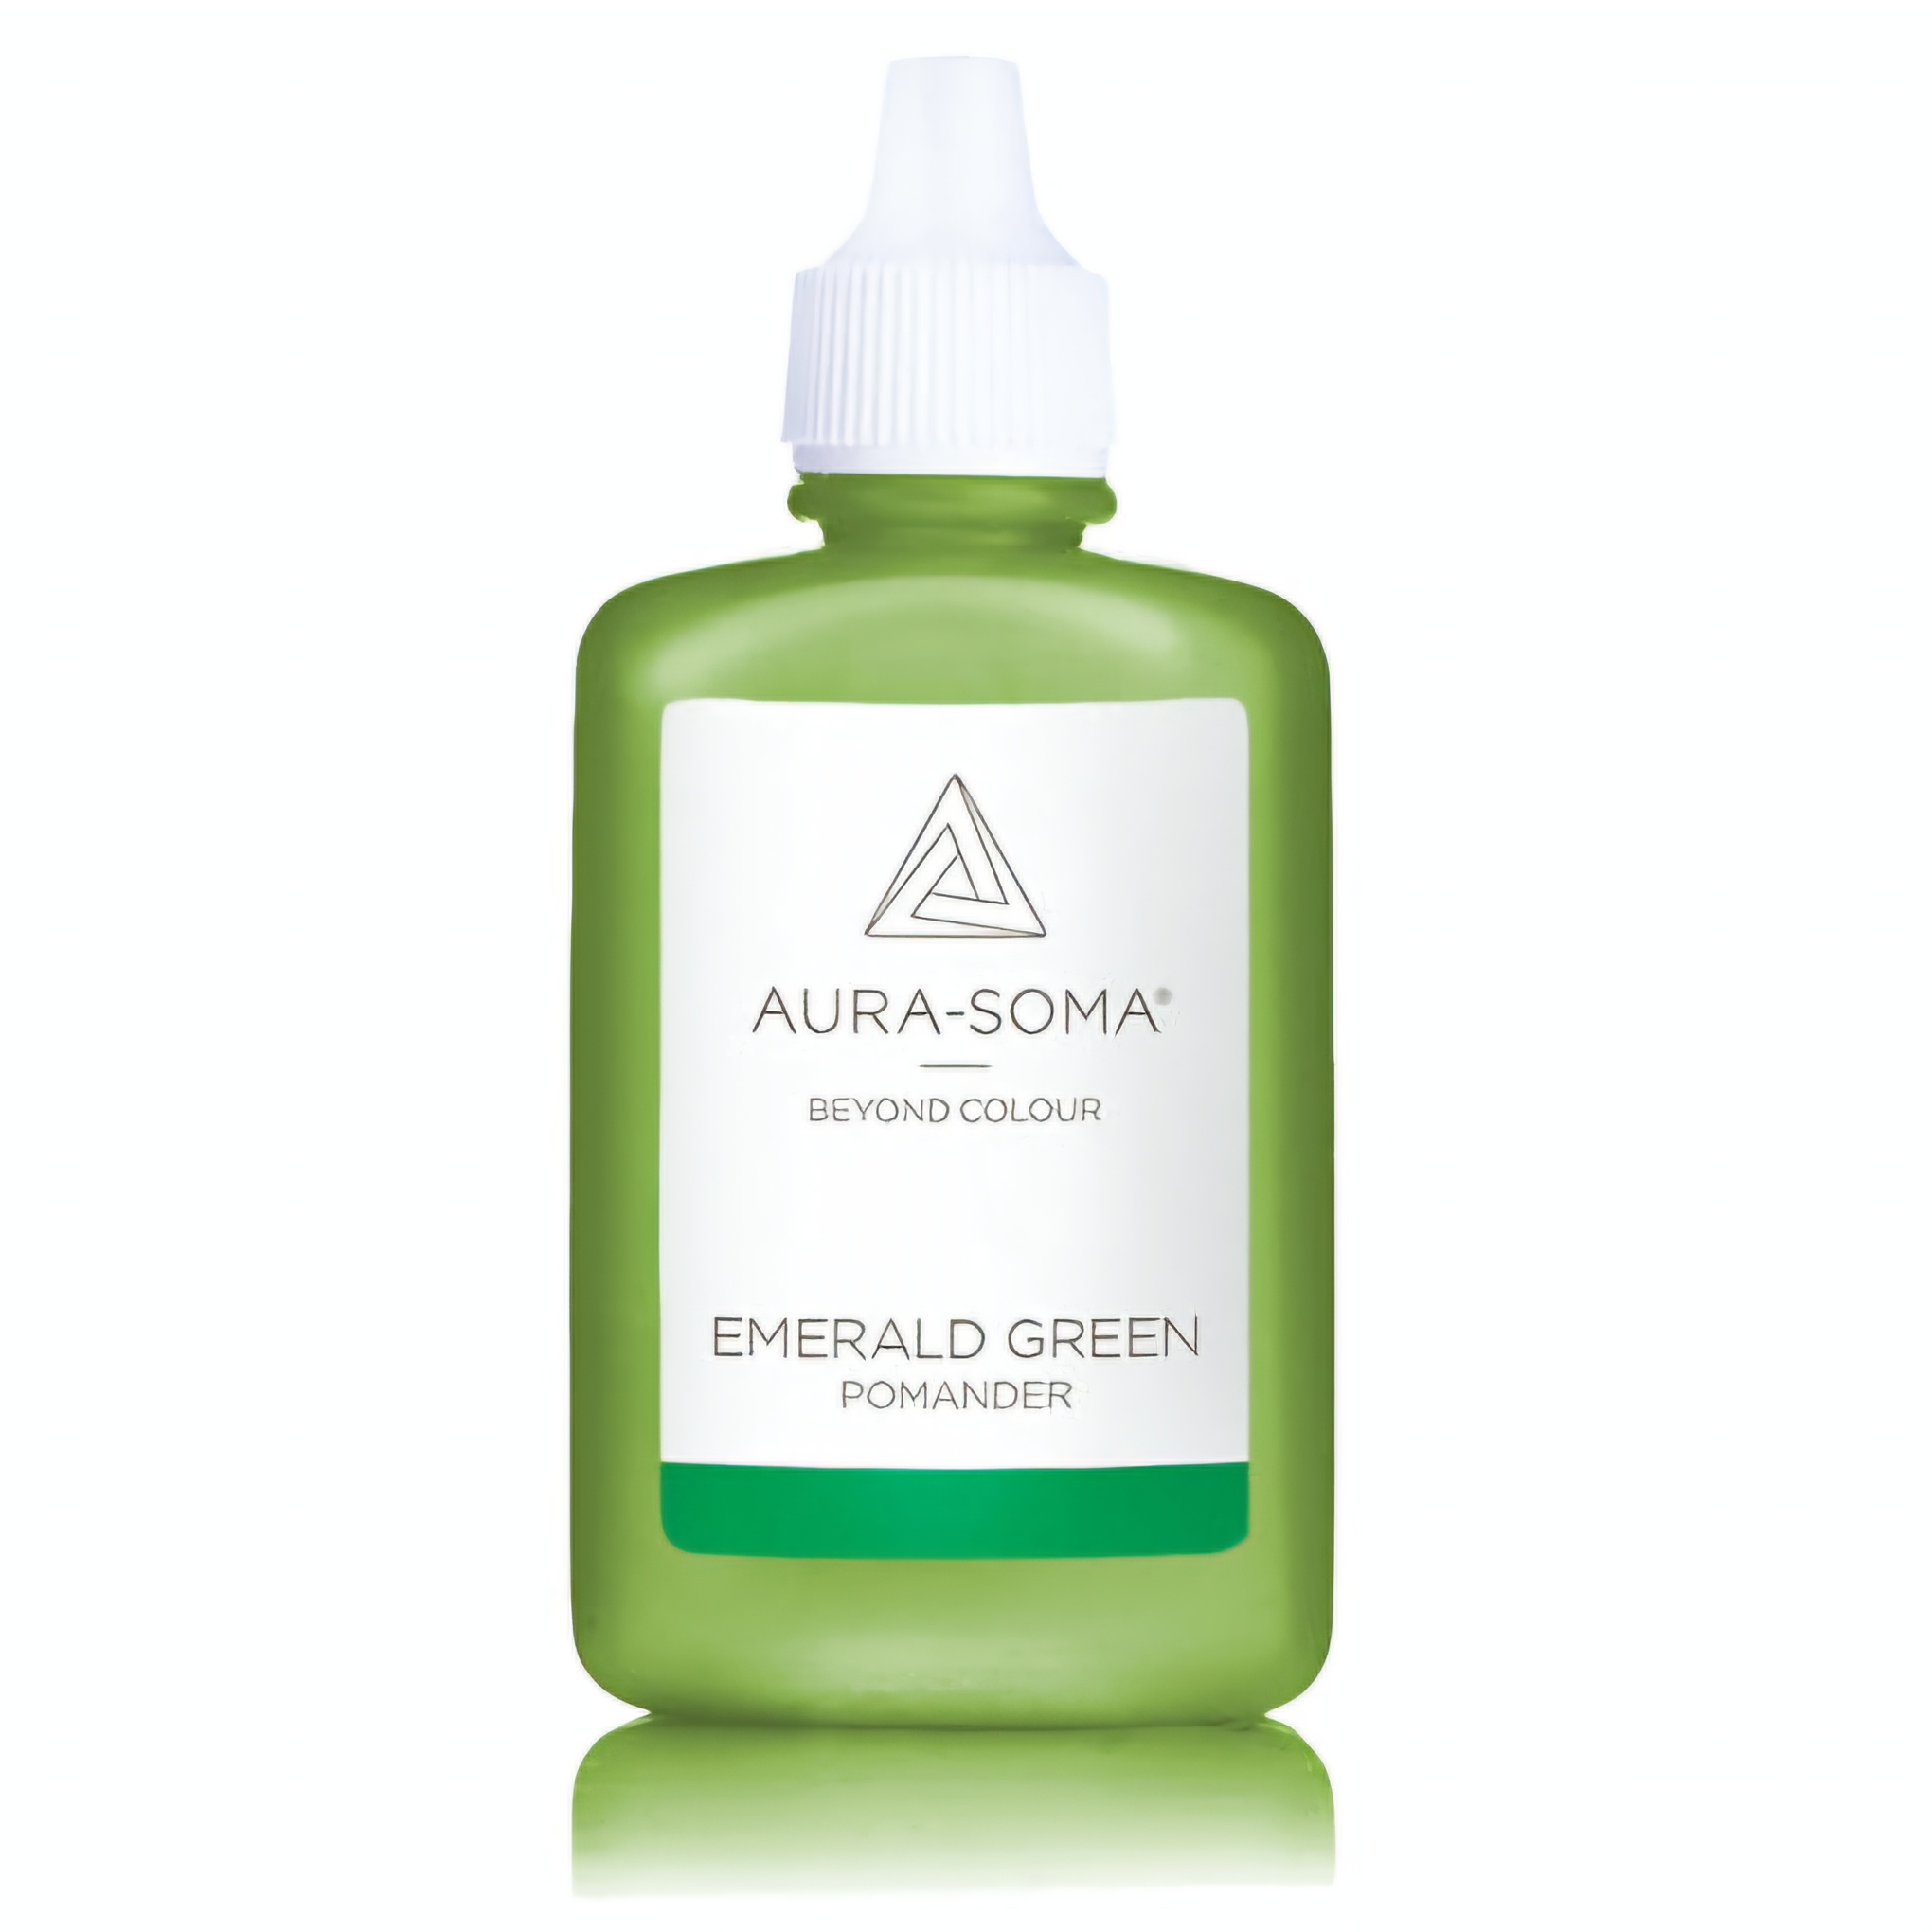 Aura-Soma esence pomander P10 Smaragdově zelený. Esence je v plastové lahvičce ve verzi 25ml. Na obalu je značka Aura-Soma a nápis 